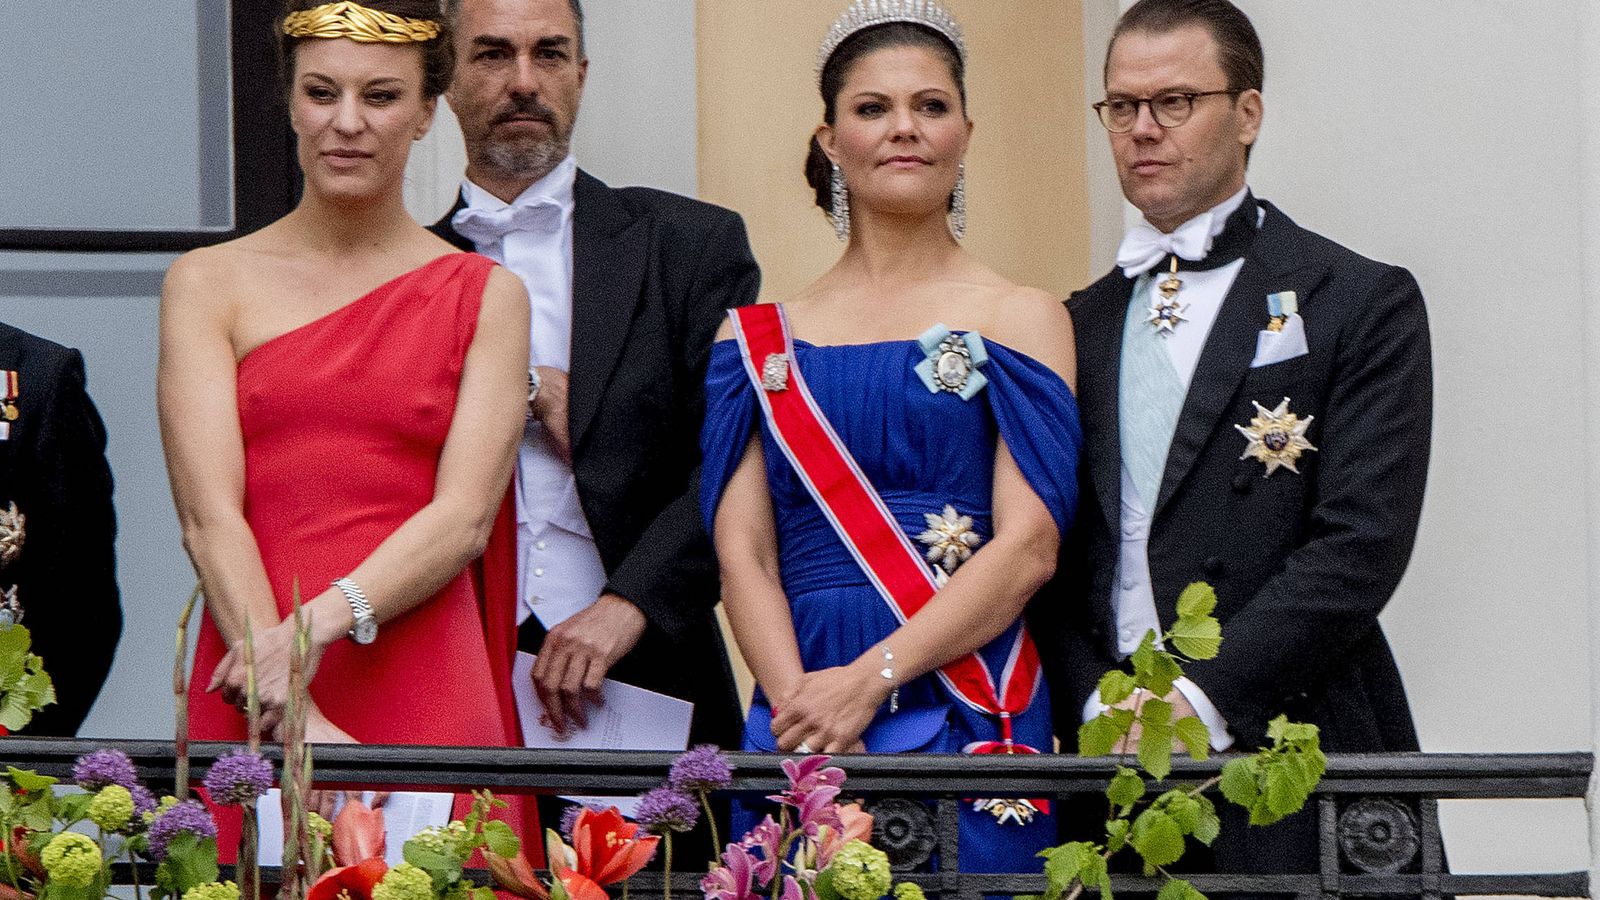 Foto: Désirée junto a su prima, la princesa Victoria de Suecia, y su marido. (Gtres)